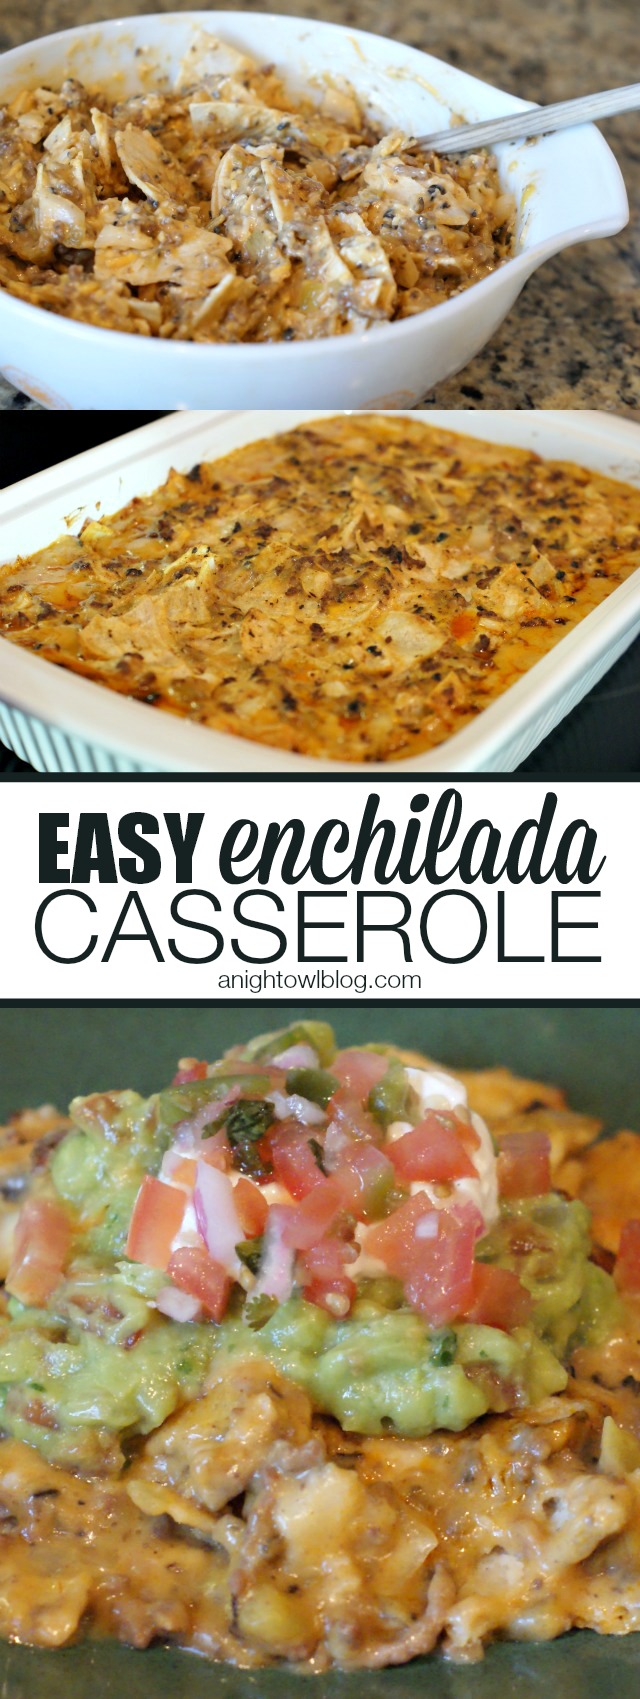 Easy Enchilada Casserole | anightowlblog.com - A Night Owl Blog